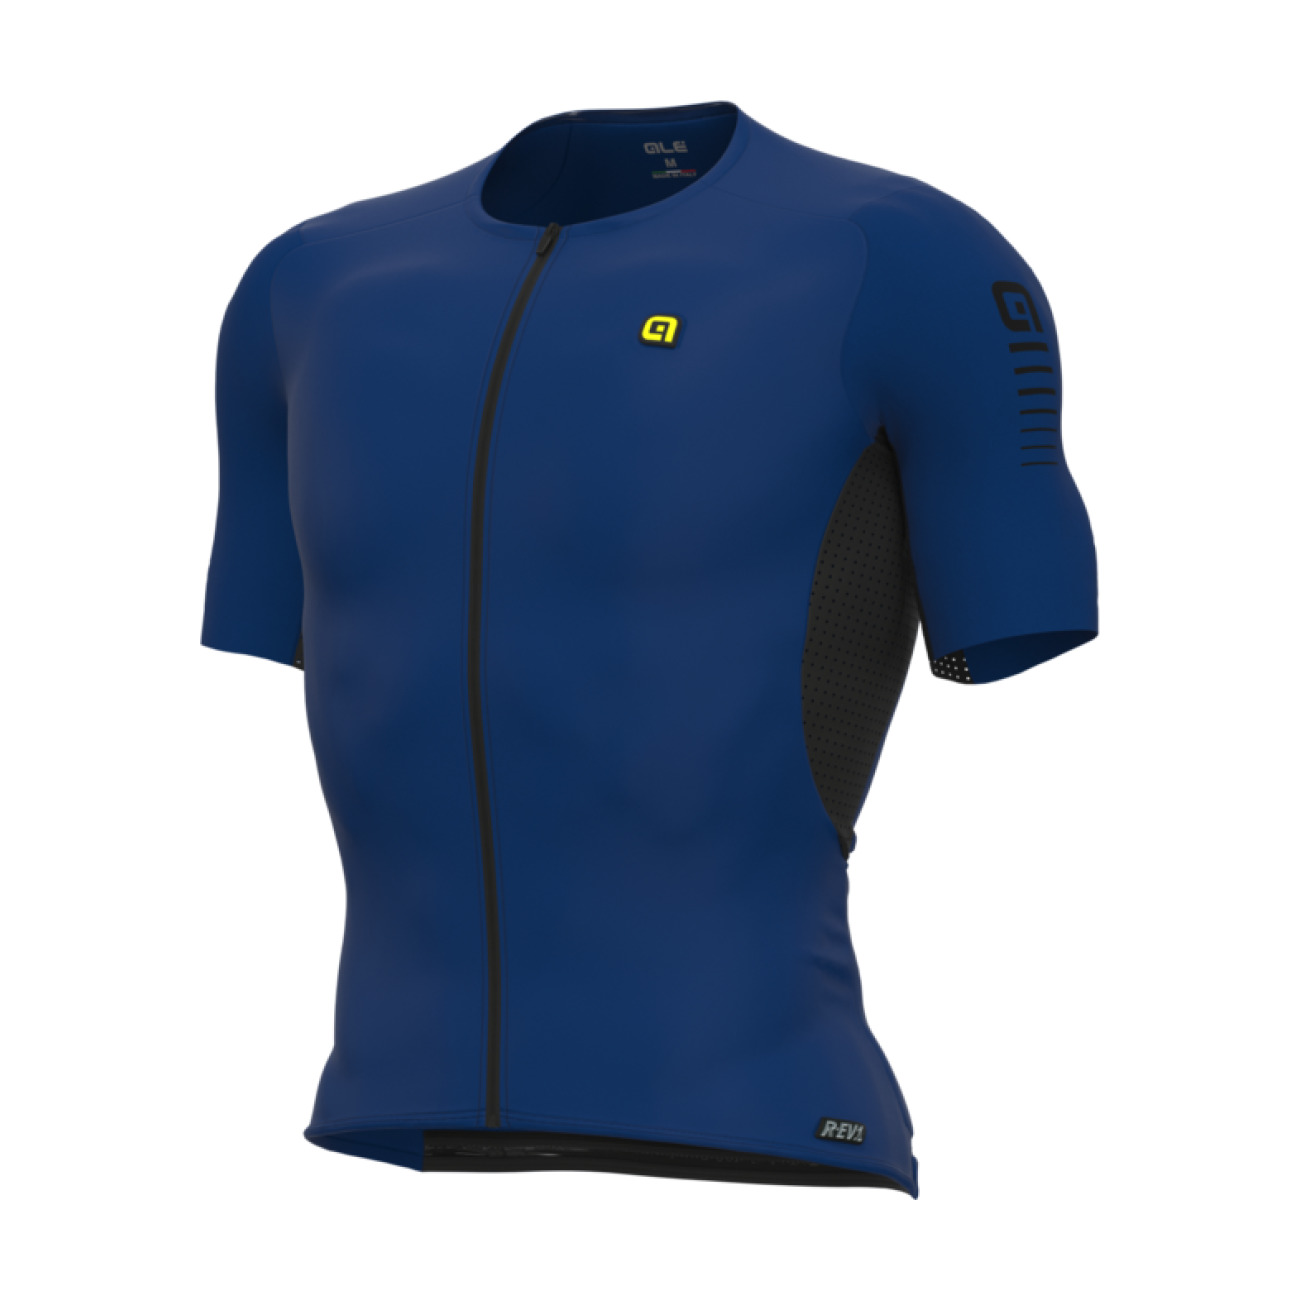 
                ALÉ Cyklistický dres s krátkým rukávem - R-EV1  RACE SPECIAL - modrá XL
            